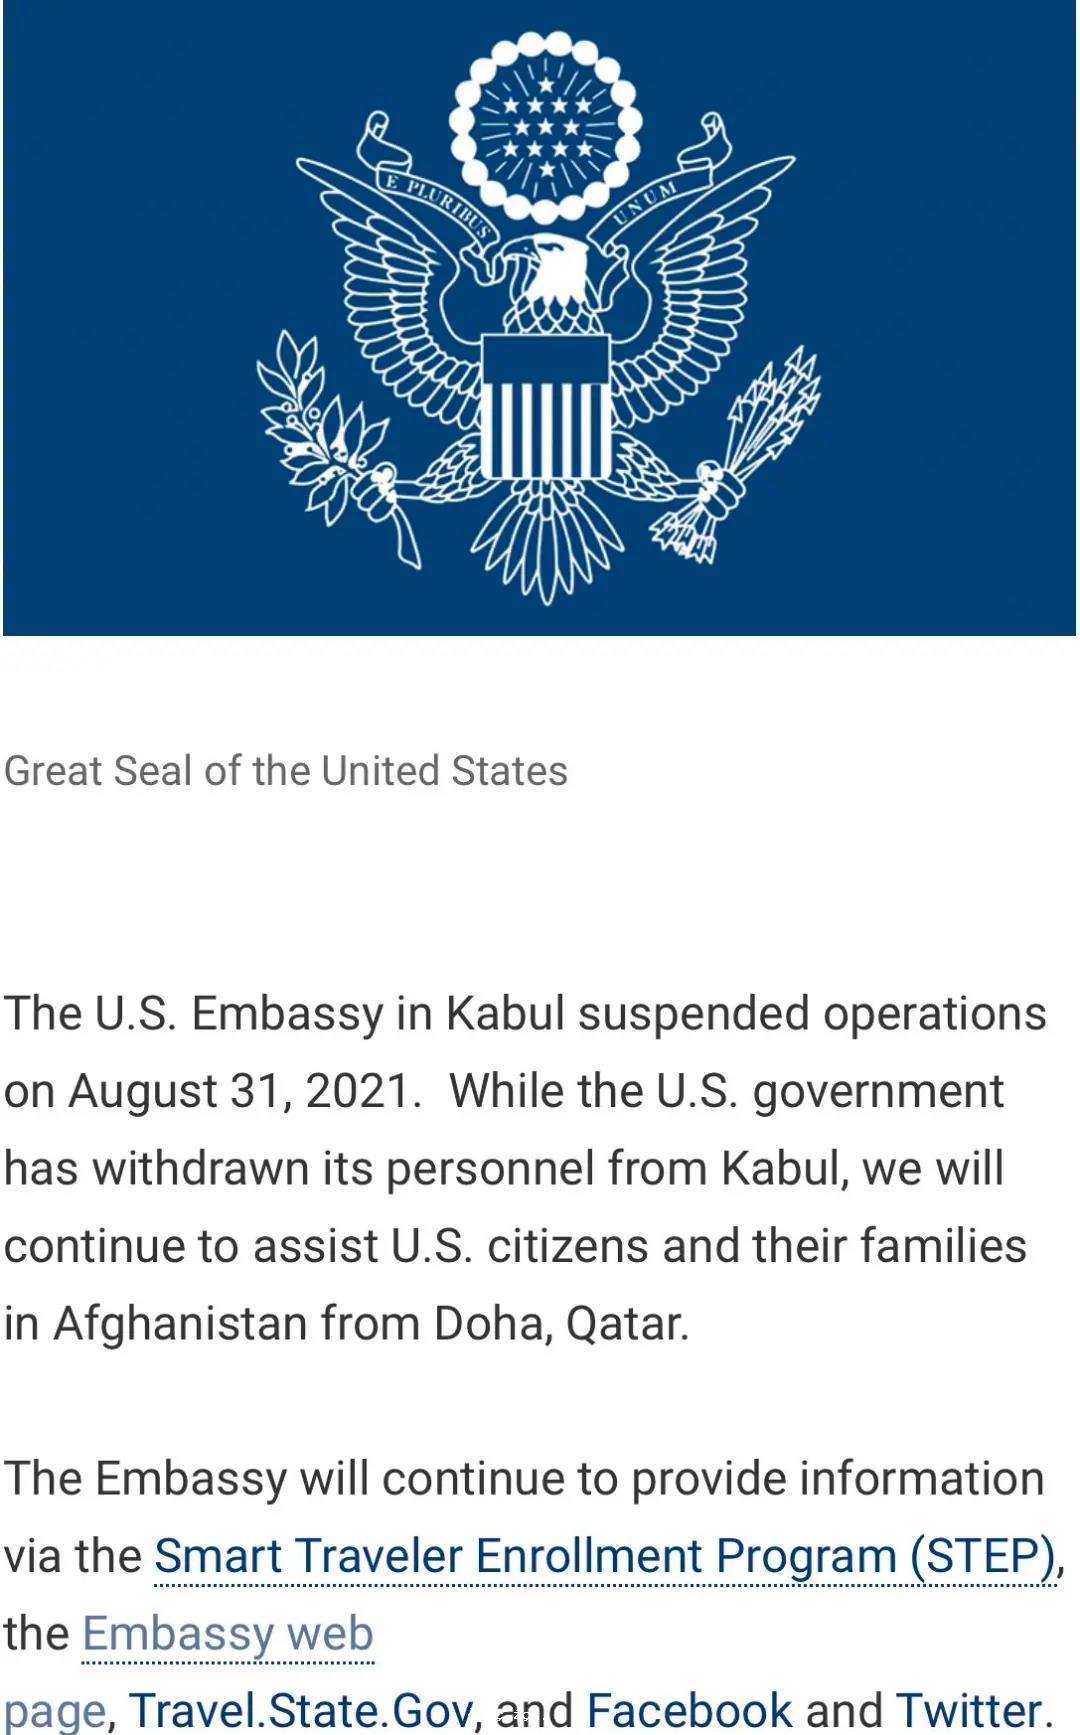 美國駐阿富汗使館宣布暫停運作